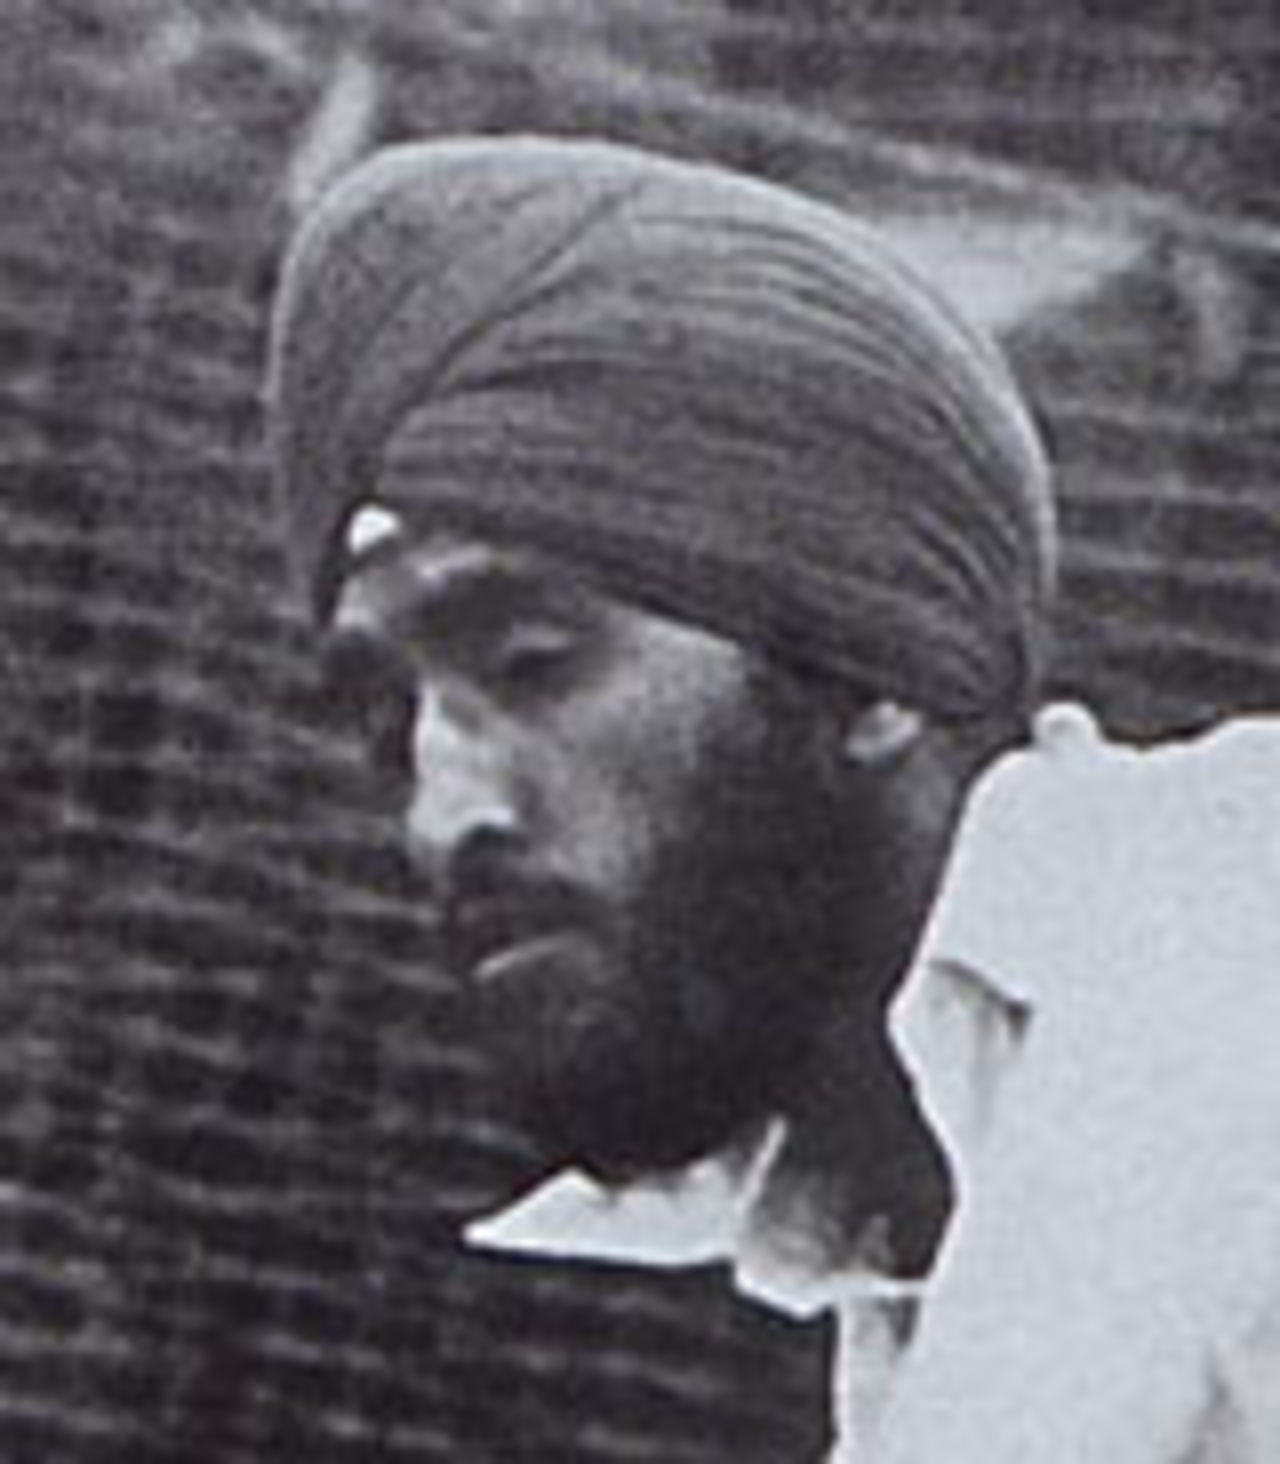 Hardit Singh Malik